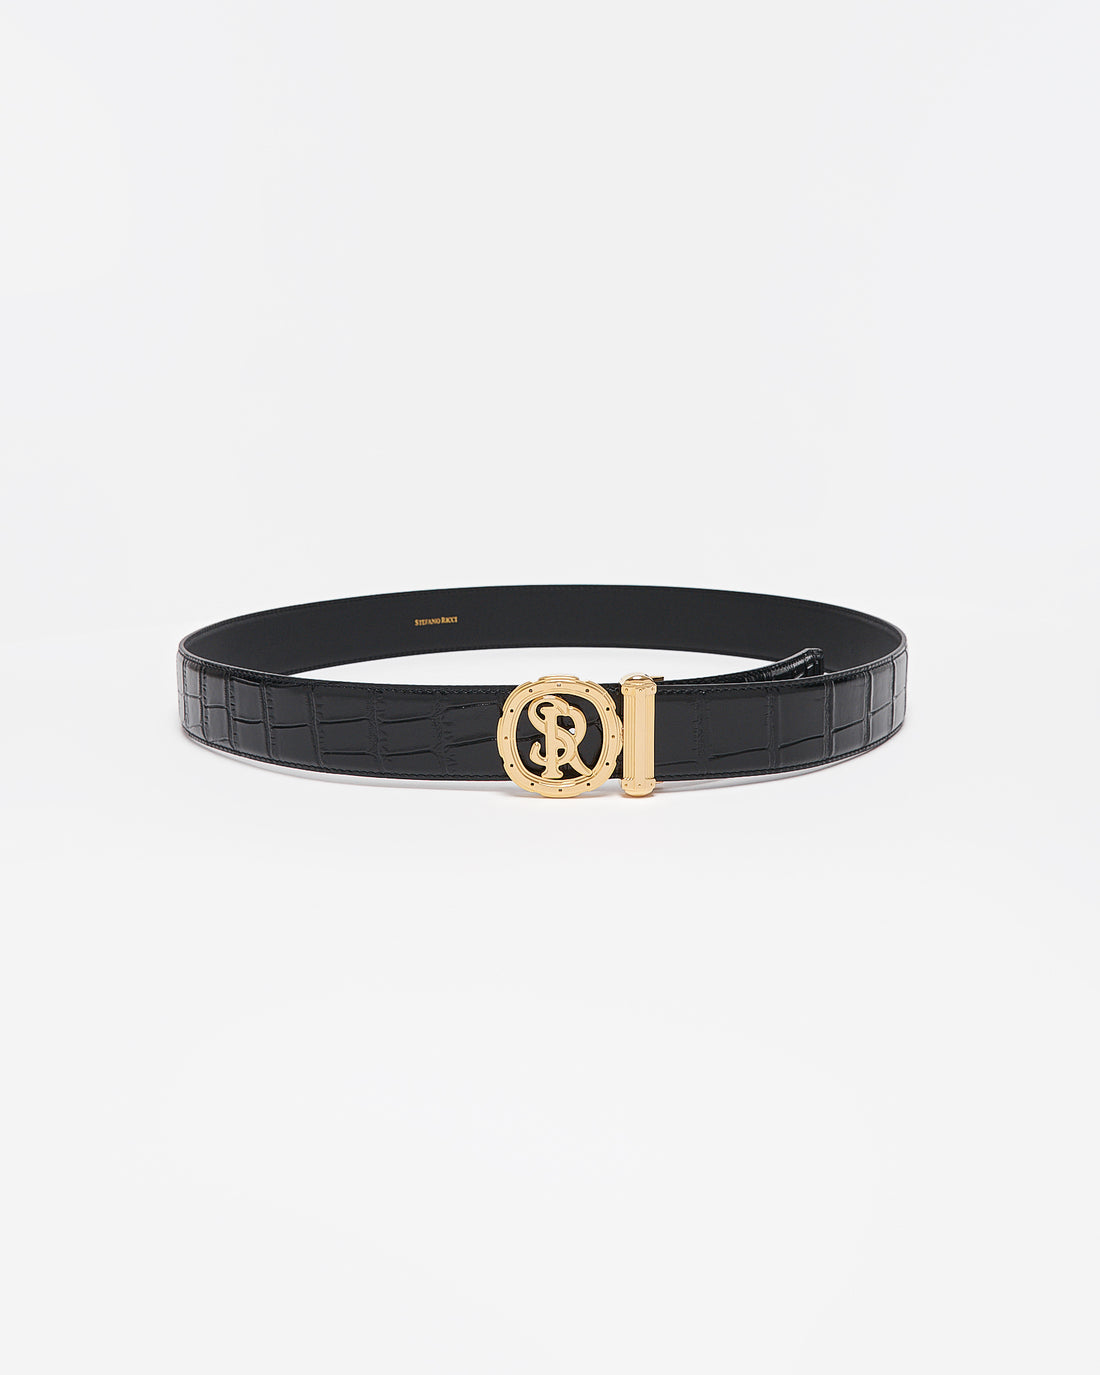 SR Gold Logo Men Black Leather Belt 99.90